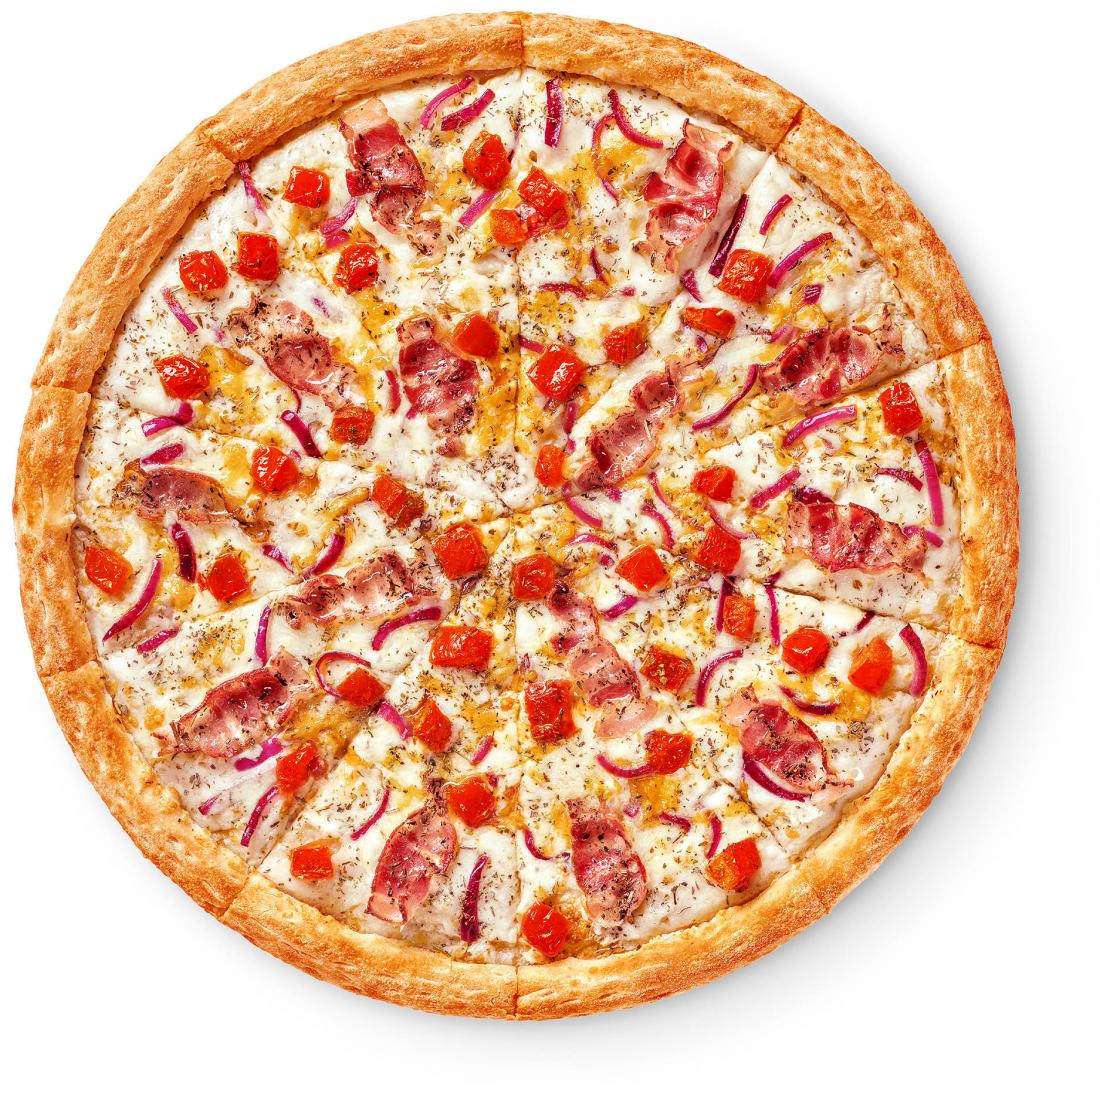 состав пиццы пепперони фреш фото 54